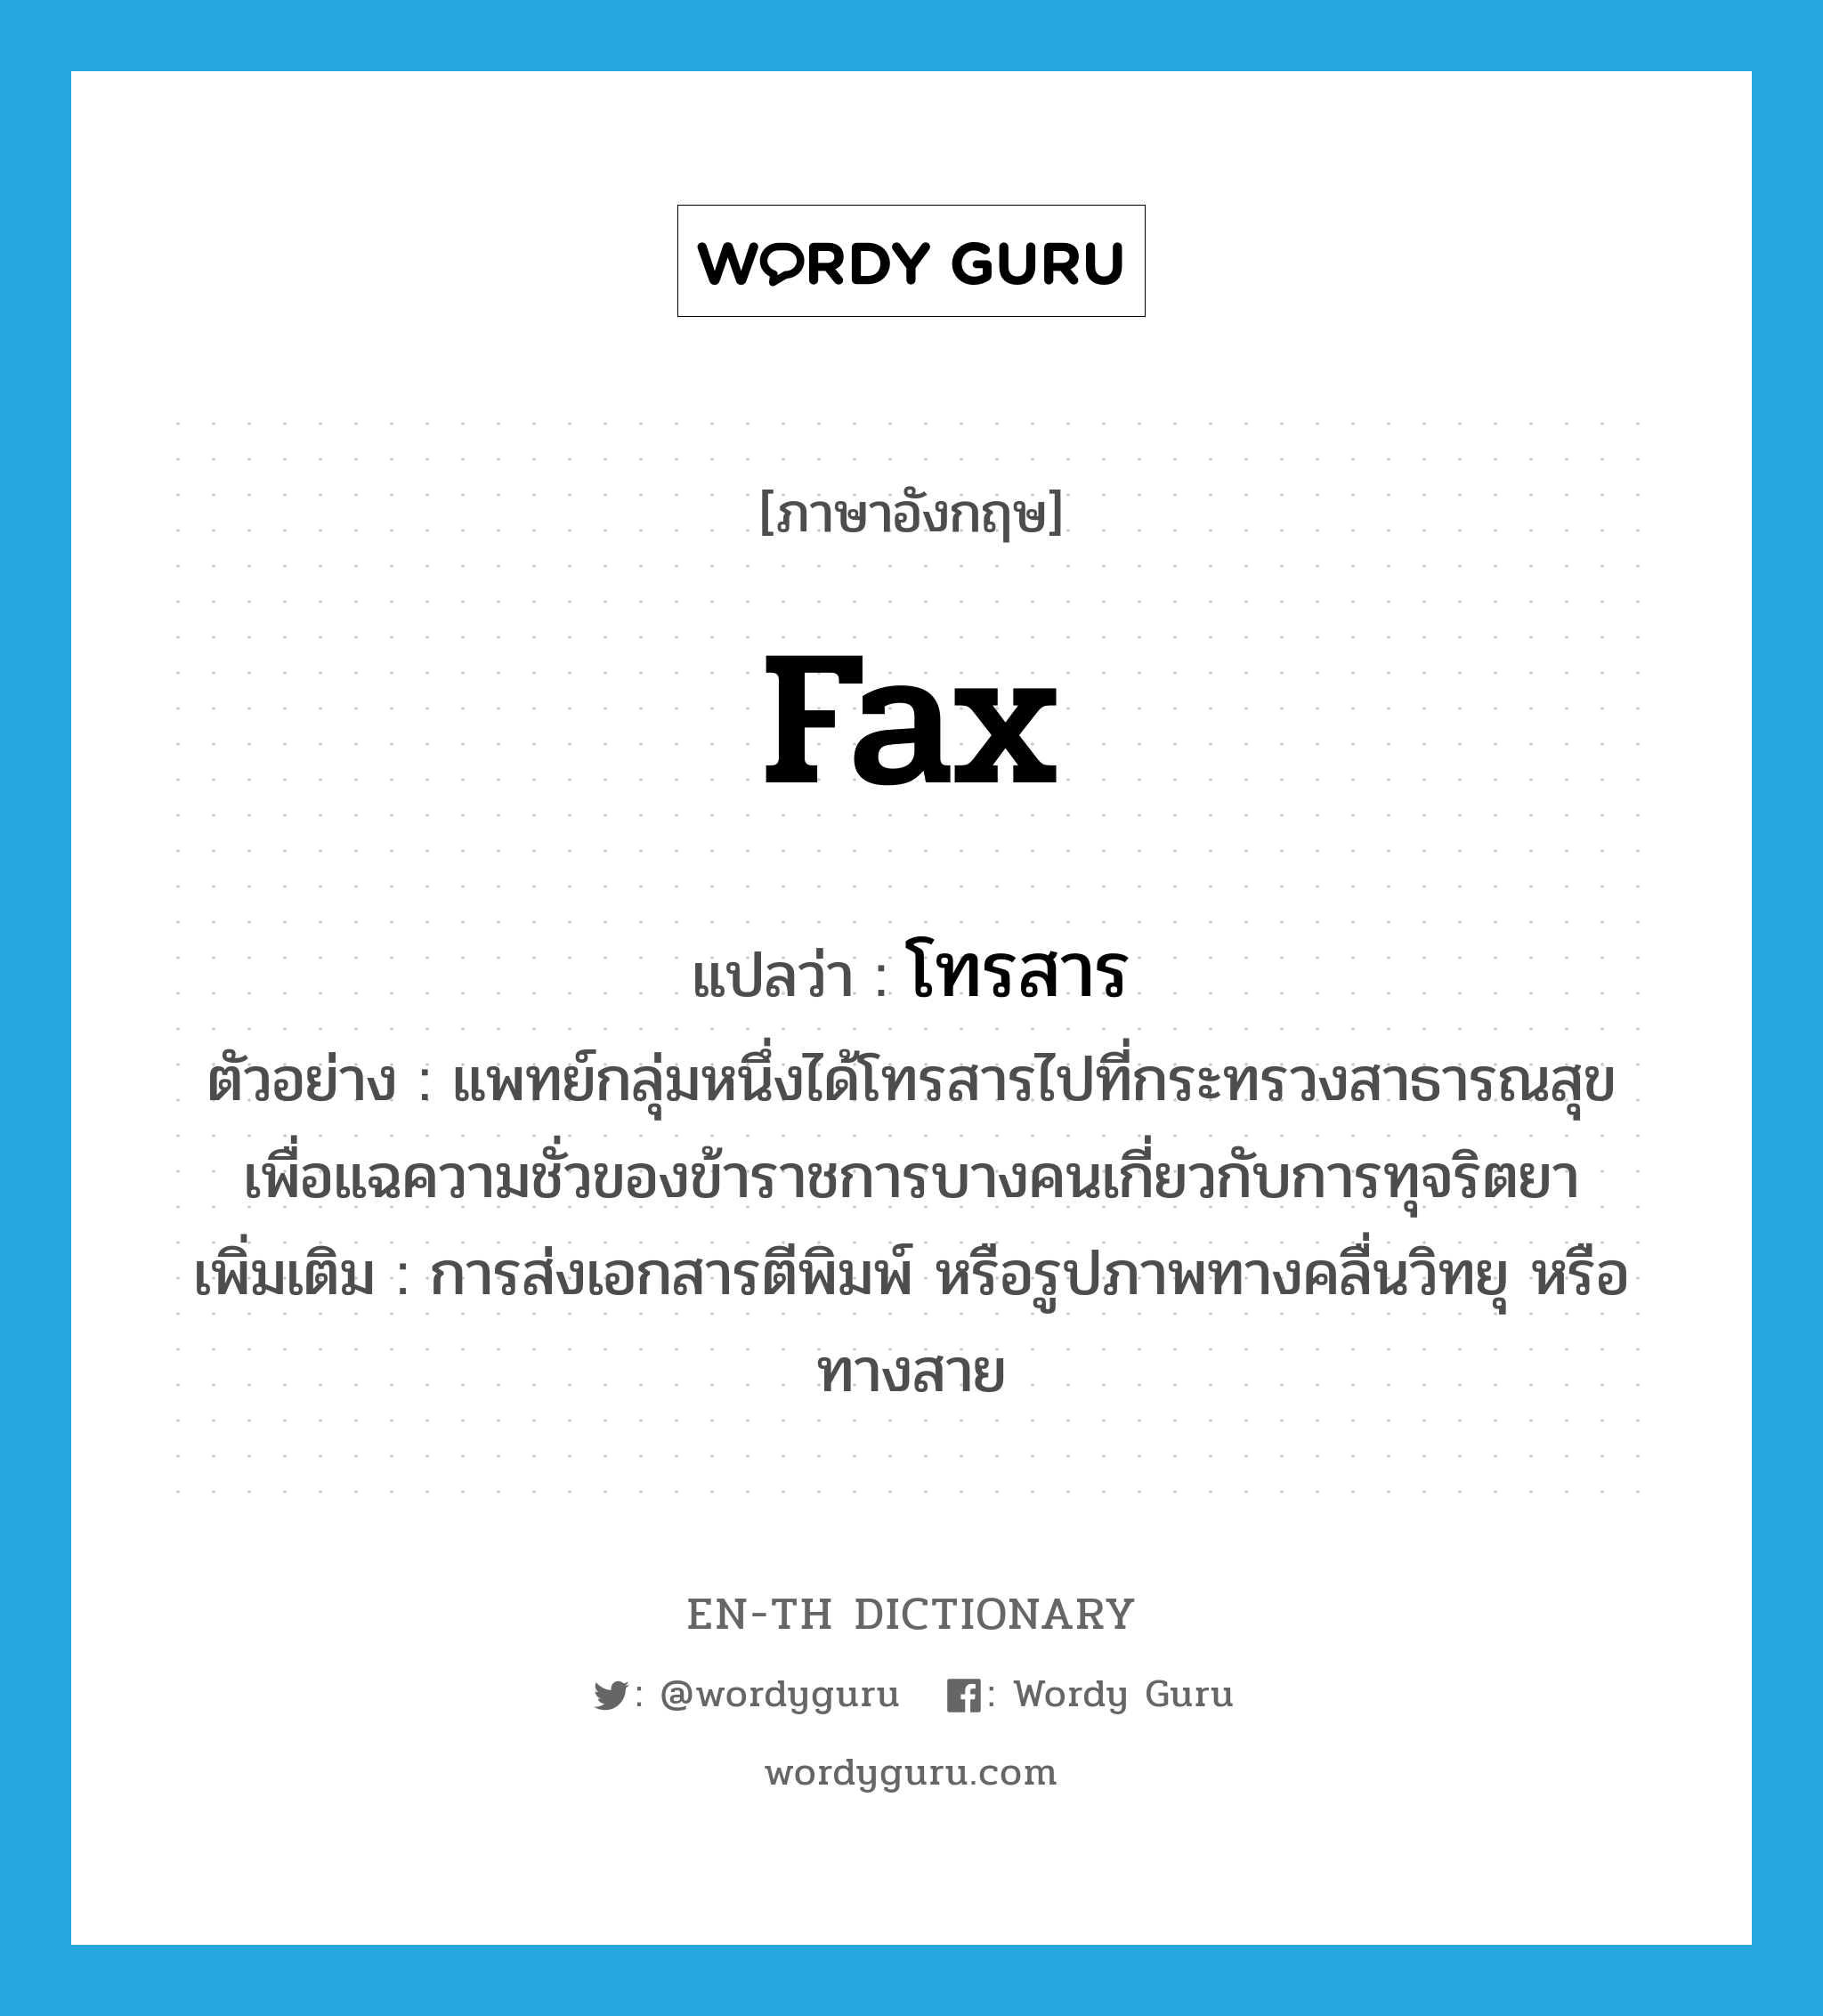 fax แปลว่า?, คำศัพท์ภาษาอังกฤษ fax แปลว่า โทรสาร ประเภท V ตัวอย่าง แพทย์กลุ่มหนึ่งได้โทรสารไปที่กระทรวงสาธารณสุข เพื่อแฉความชั่วของข้าราชการบางคนเกี่ยวกับการทุจริตยา เพิ่มเติม การส่งเอกสารตีพิมพ์ หรือรูปภาพทางคลื่นวิทยุ หรือทางสาย หมวด V